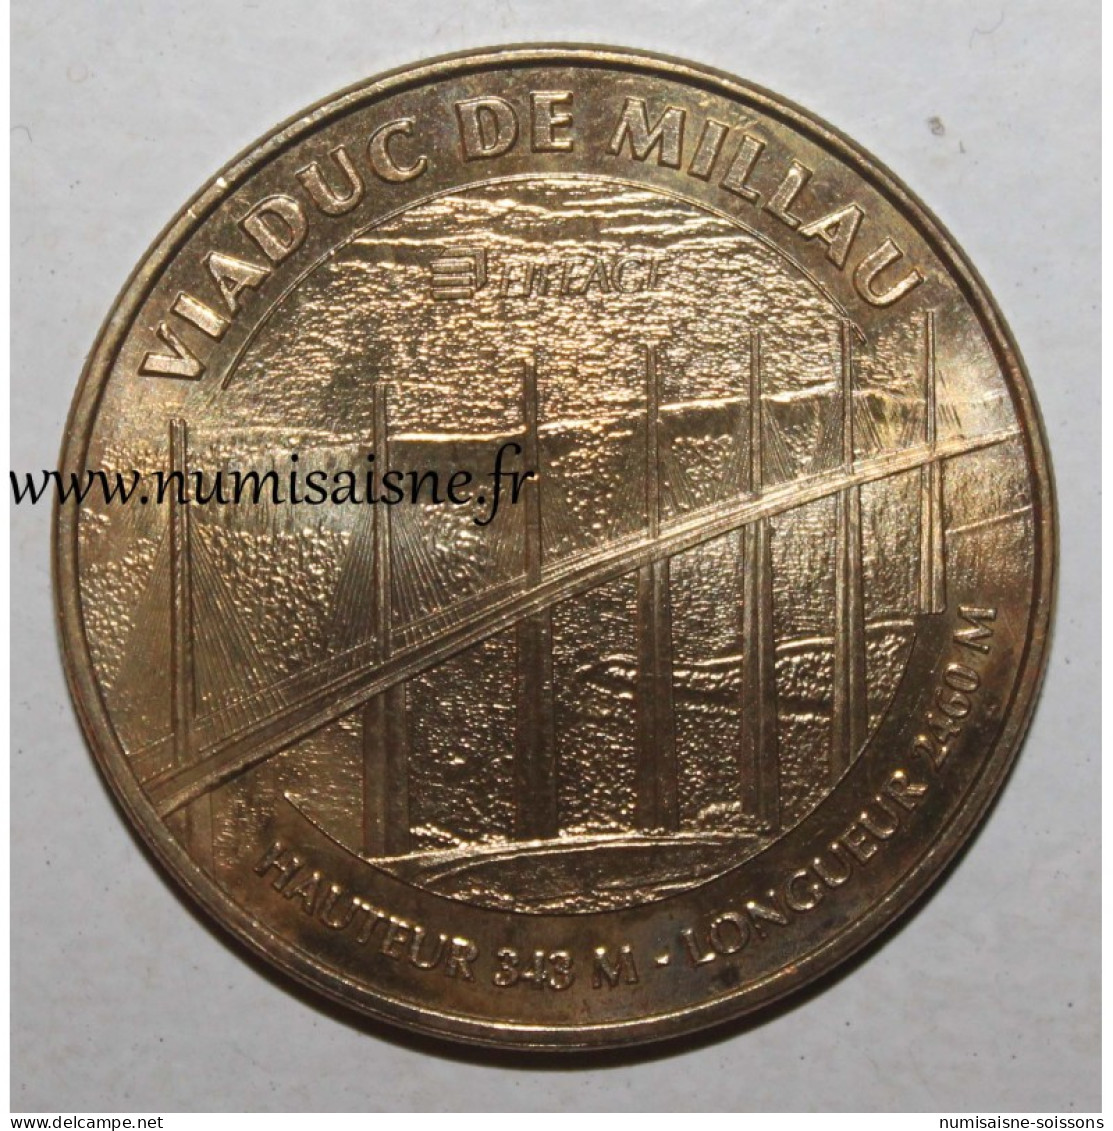 12 - MILLAU - VIADUC - HAUTEUR 343 M - LONGUEUR 2460 M - Monnaie De Paris - 2010 - 2010